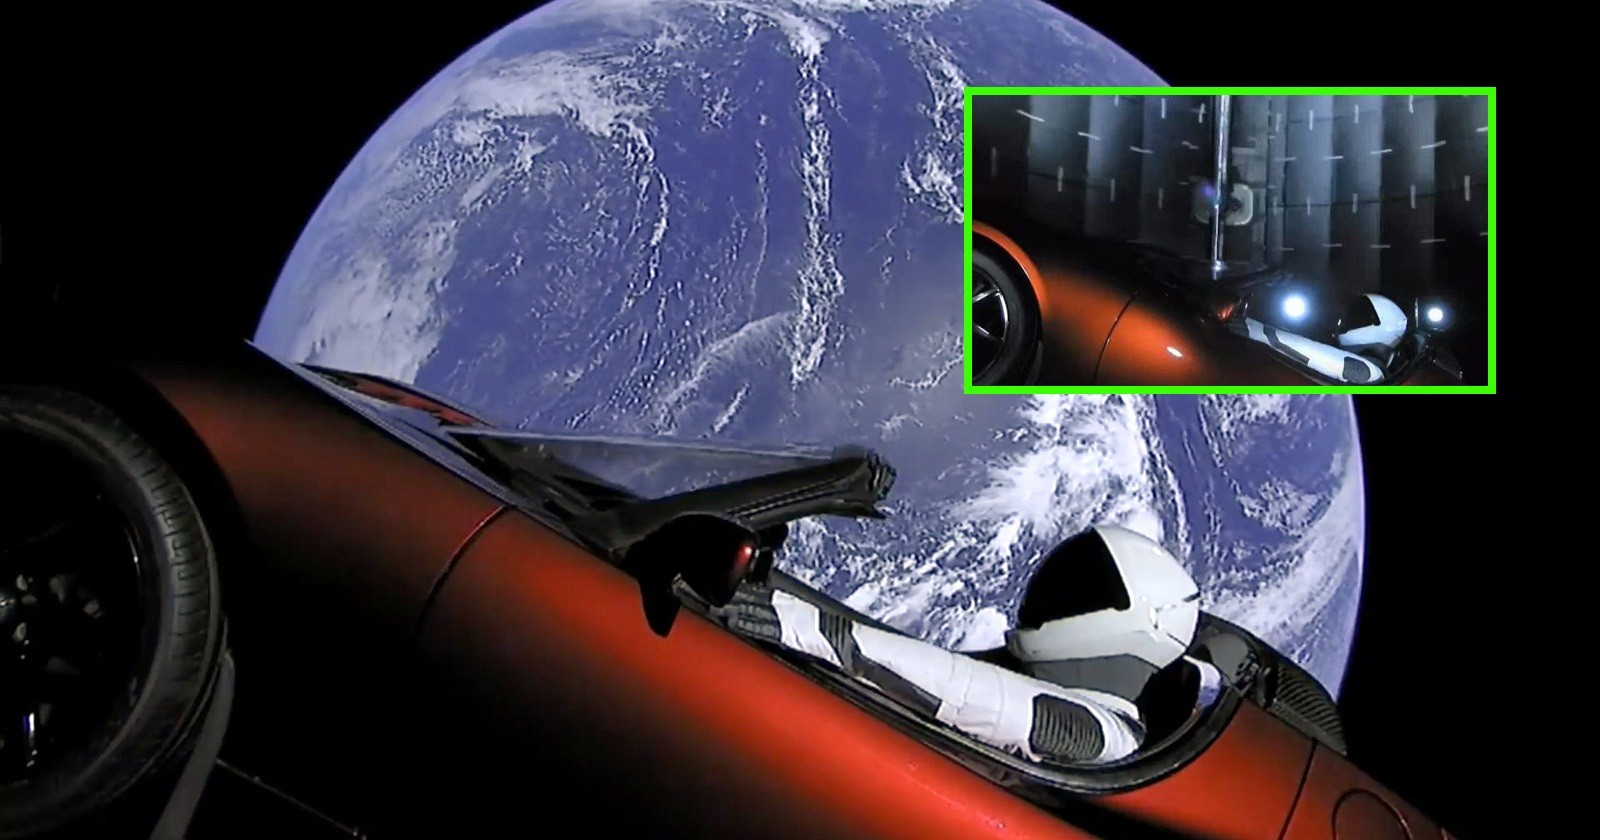 ¿Las imágenes del Tesla en el espacio fueron rodadas en un plató? ¡Conoce la verdad! (Video)